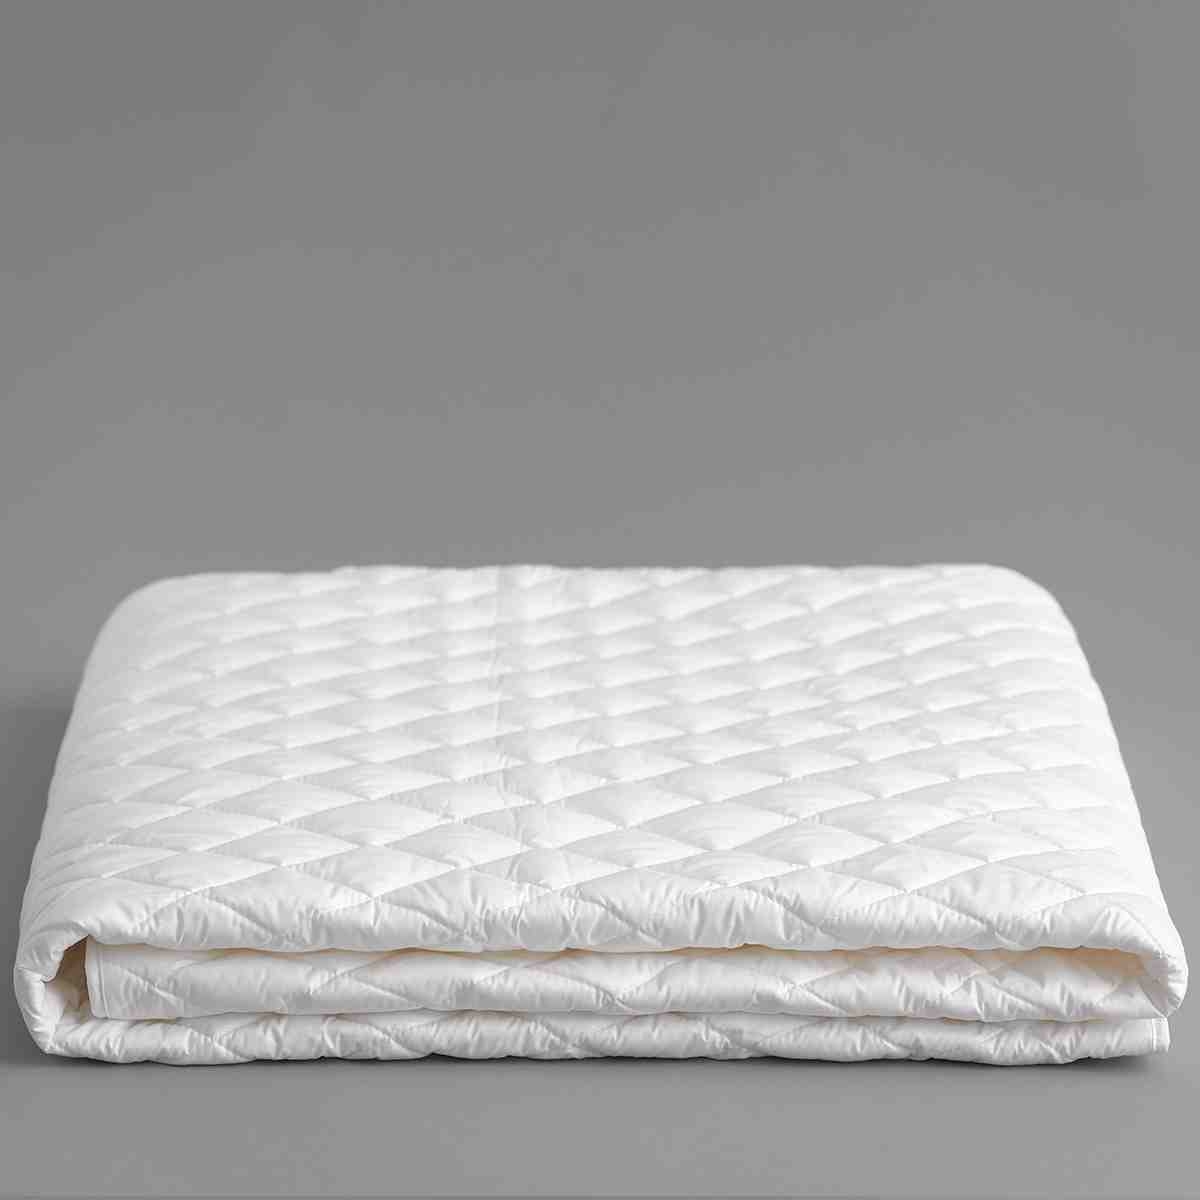 Cotton mattress pad 2